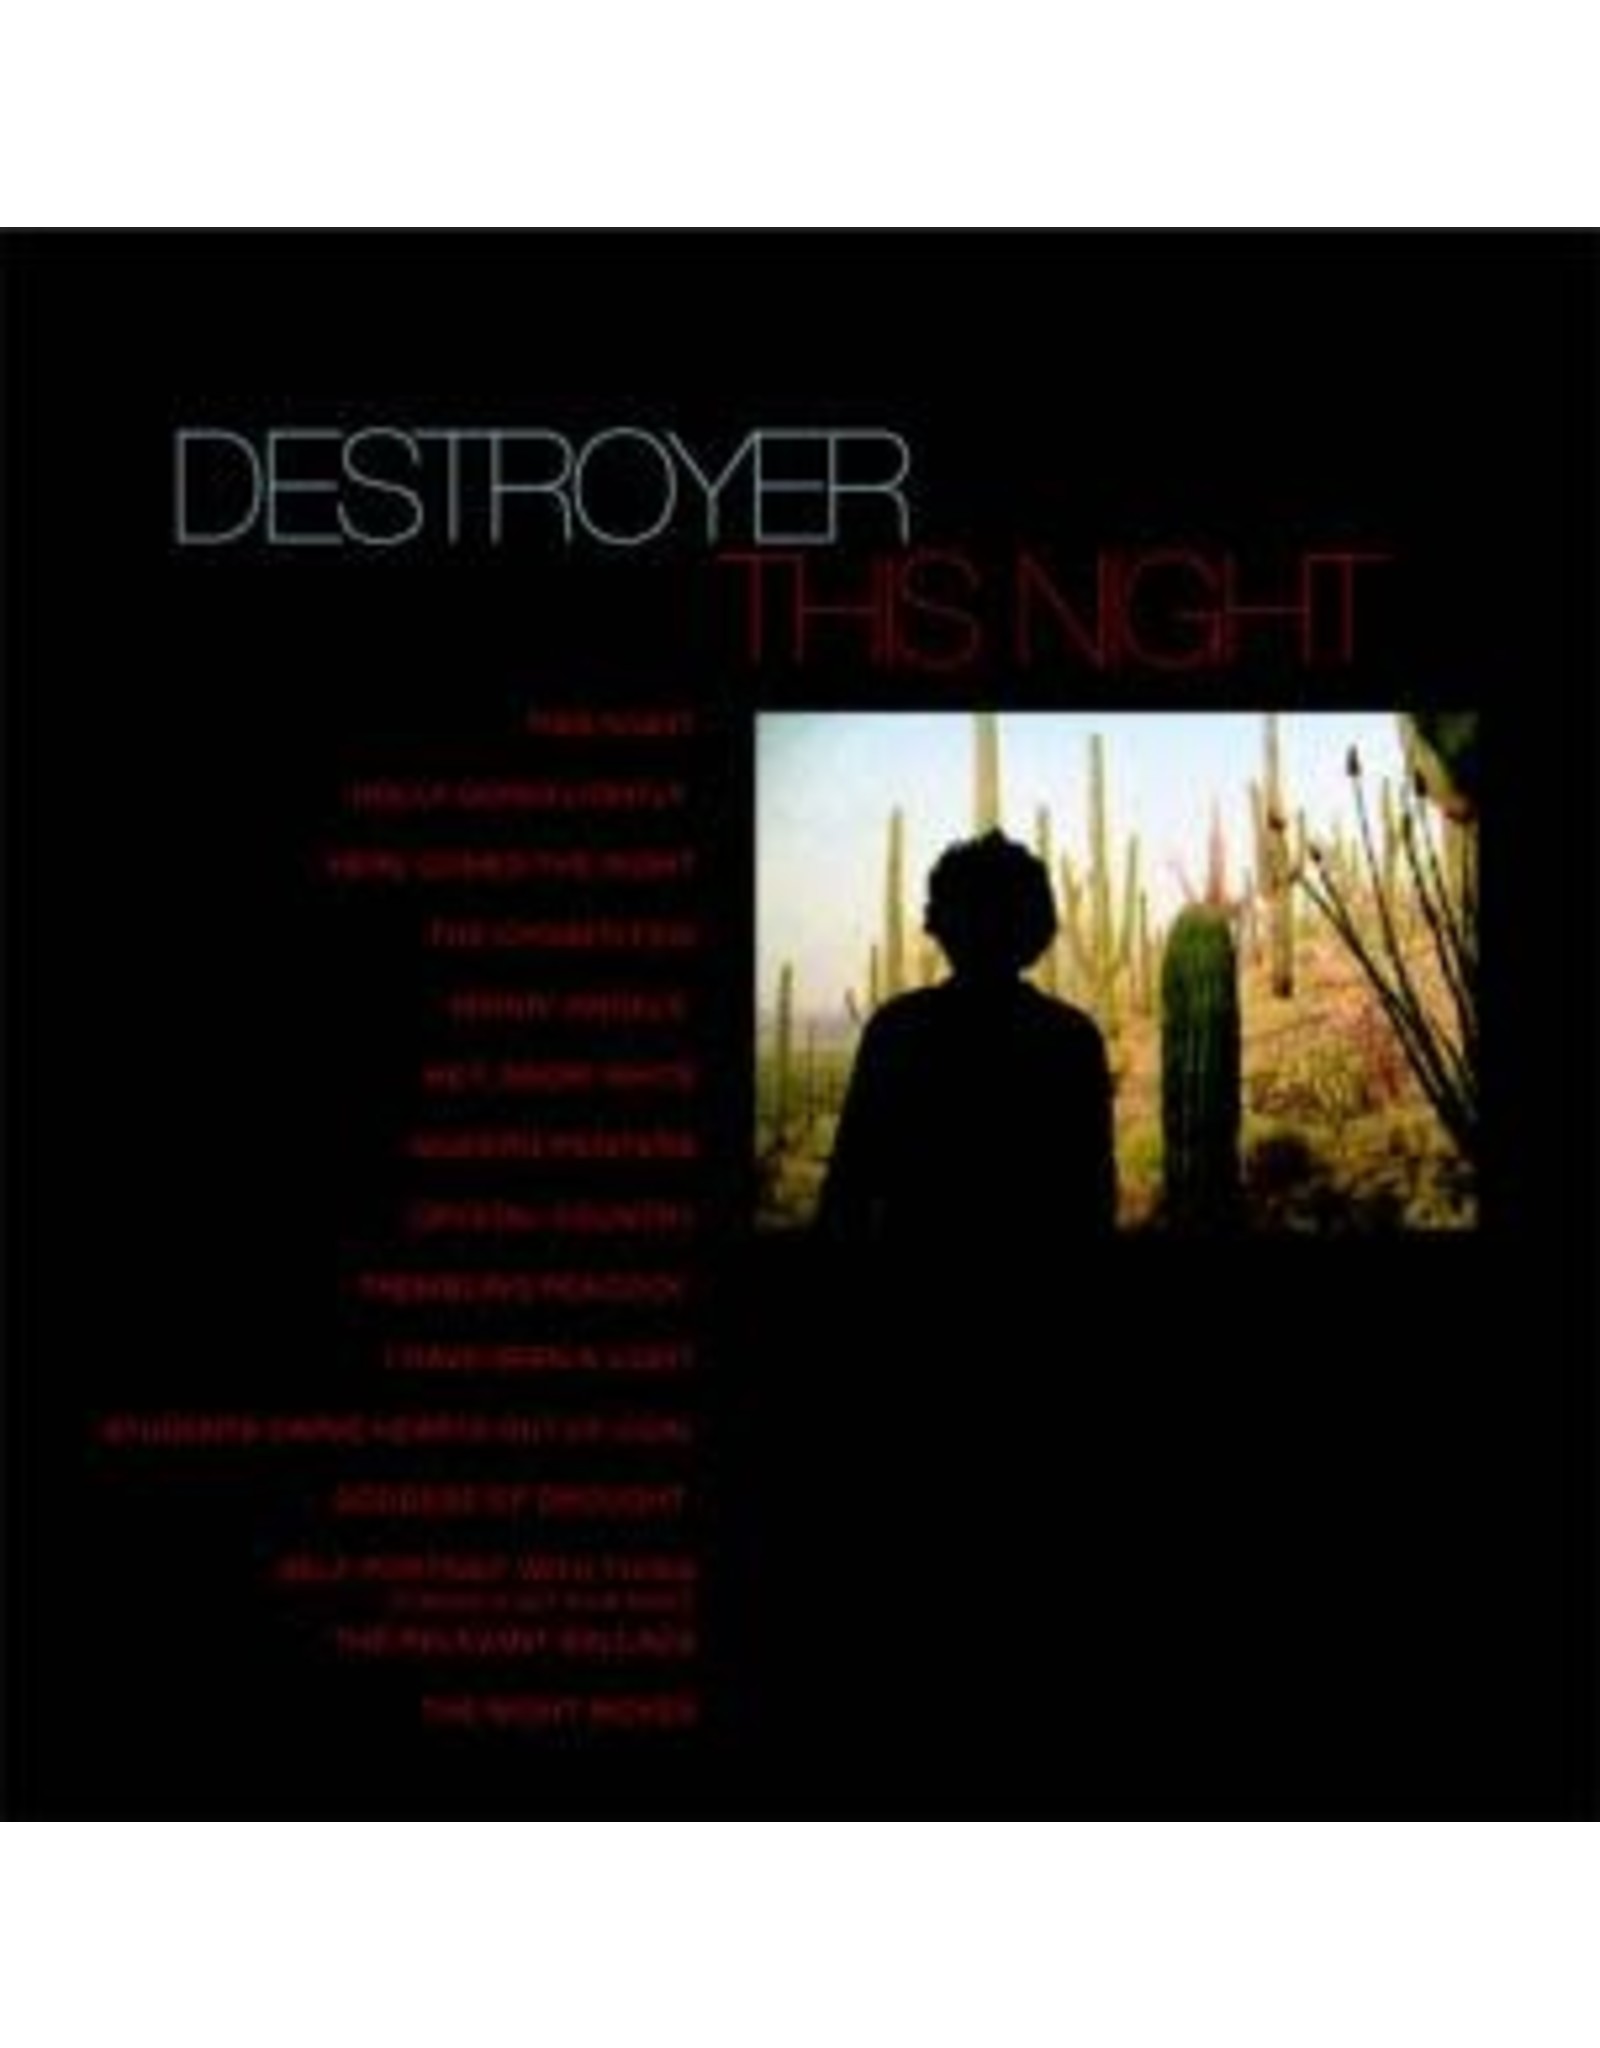 Merge Destroyer: This Night LP